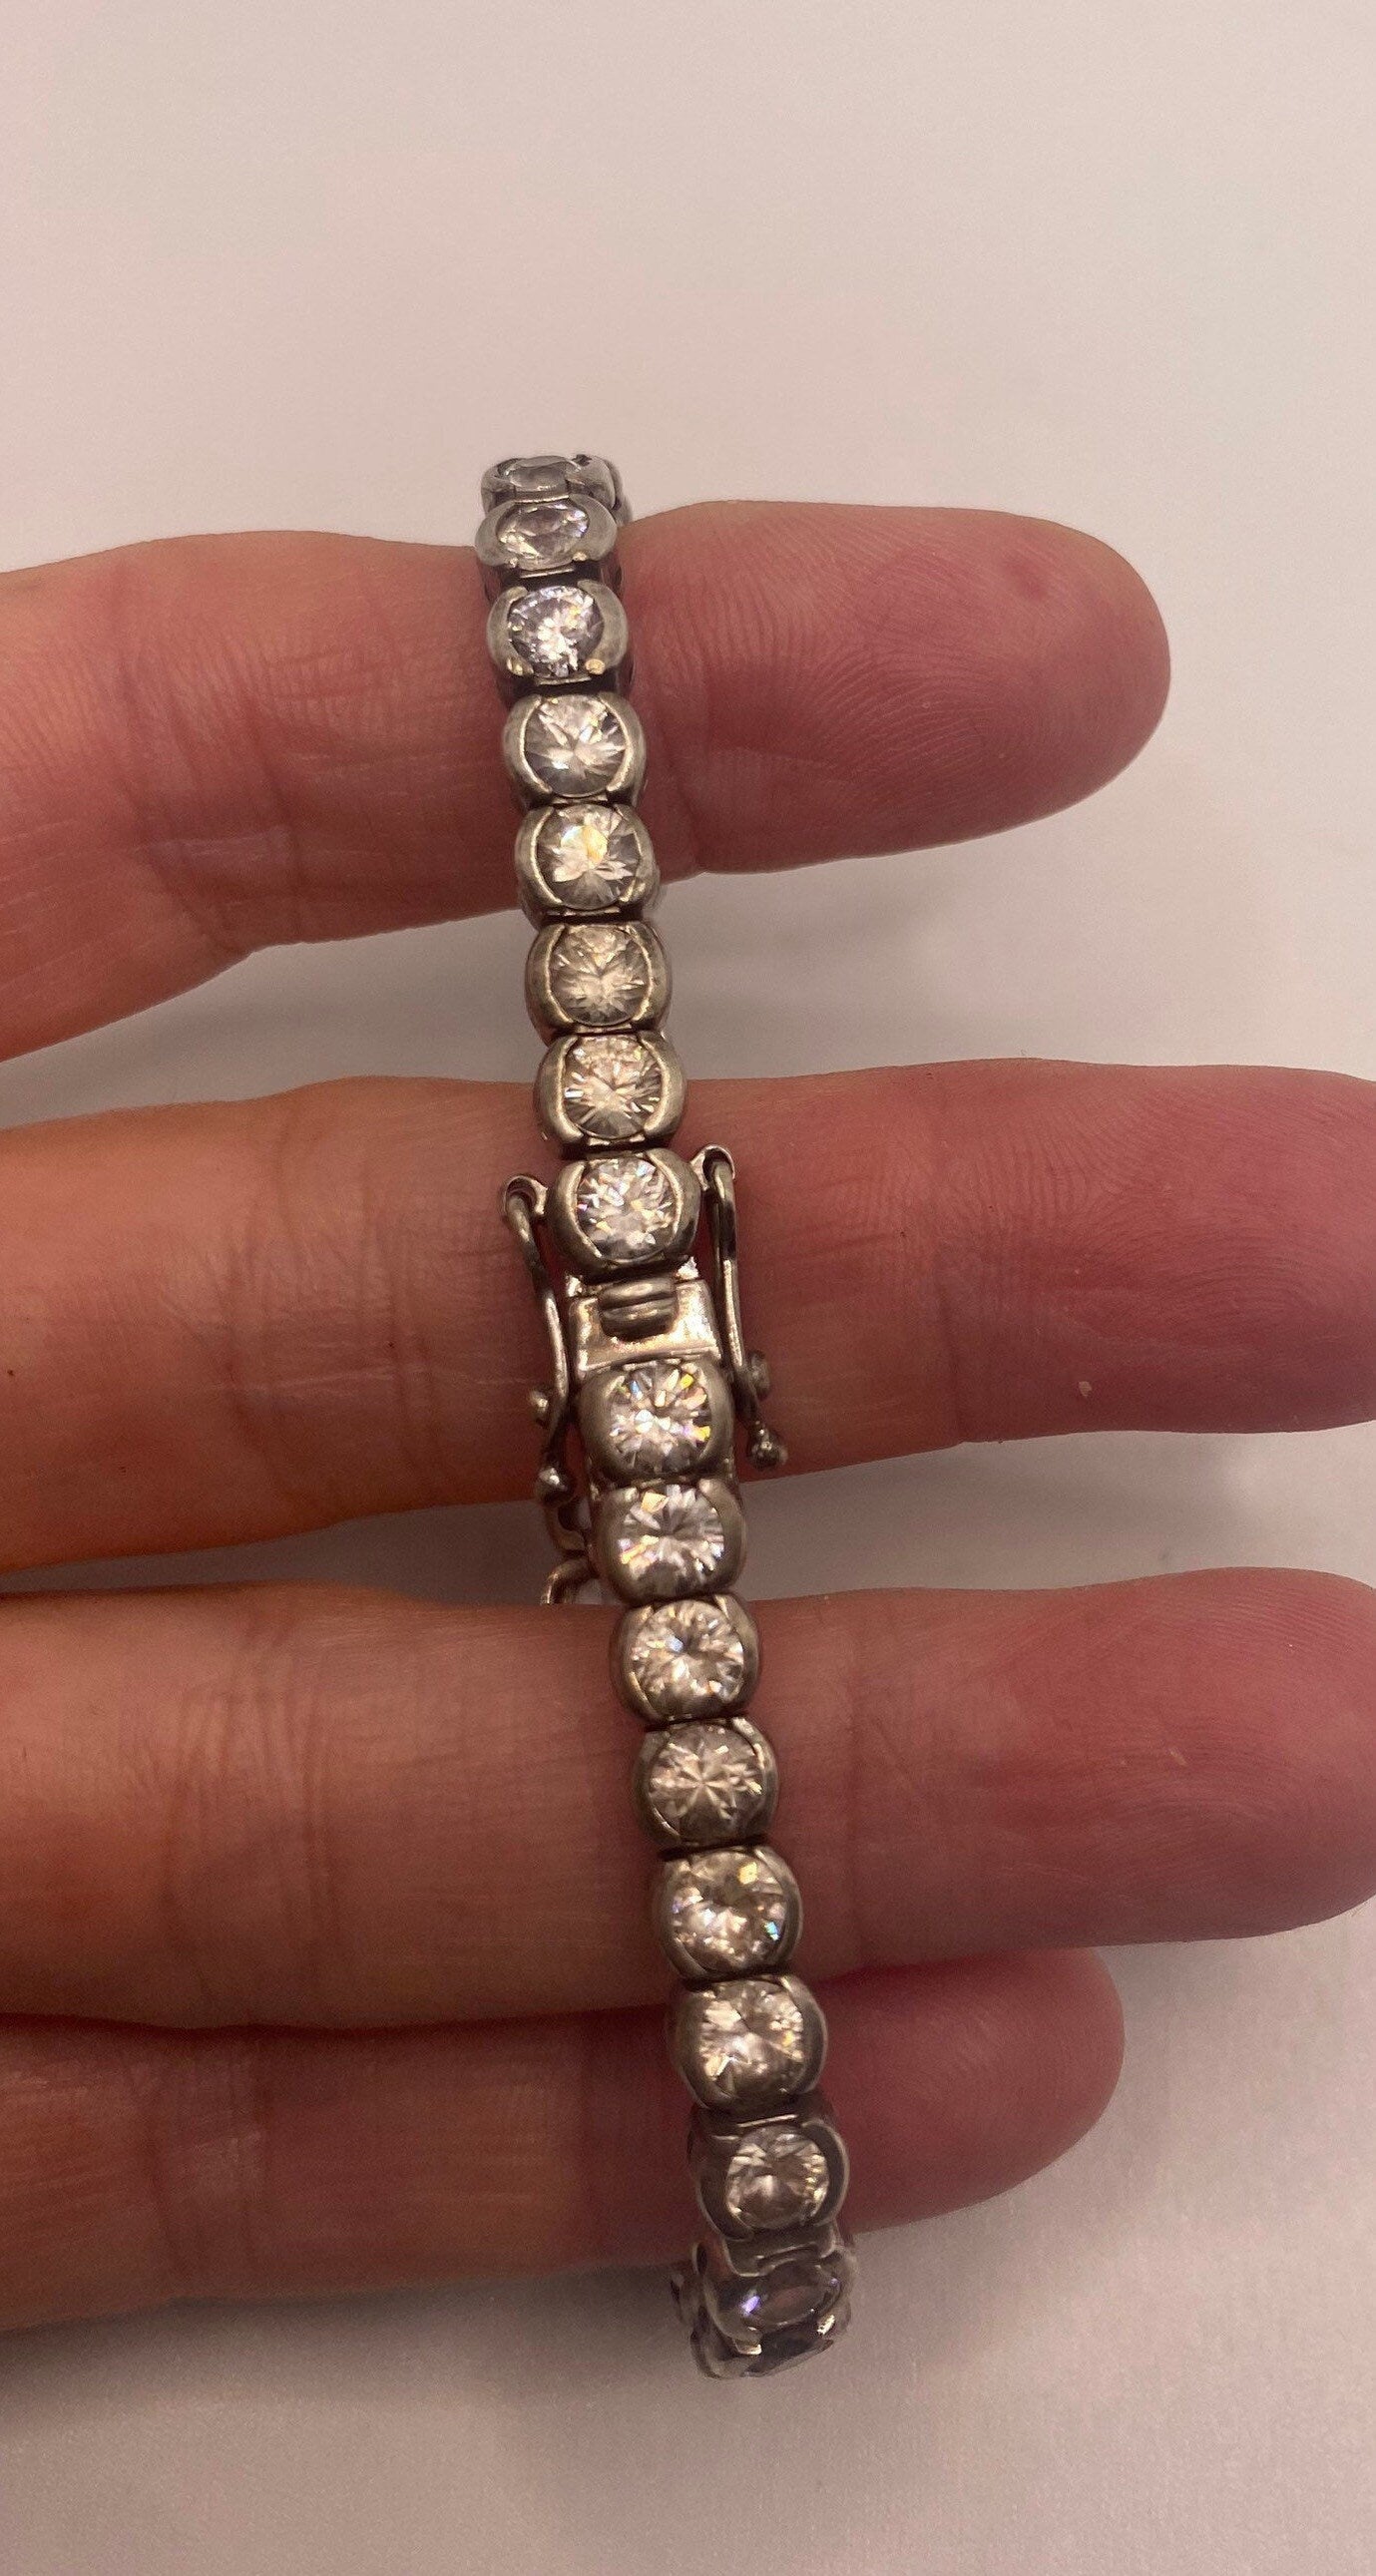 Handmade Genuine White Sapphires 925 Sterling Silver Tennis Bracelet